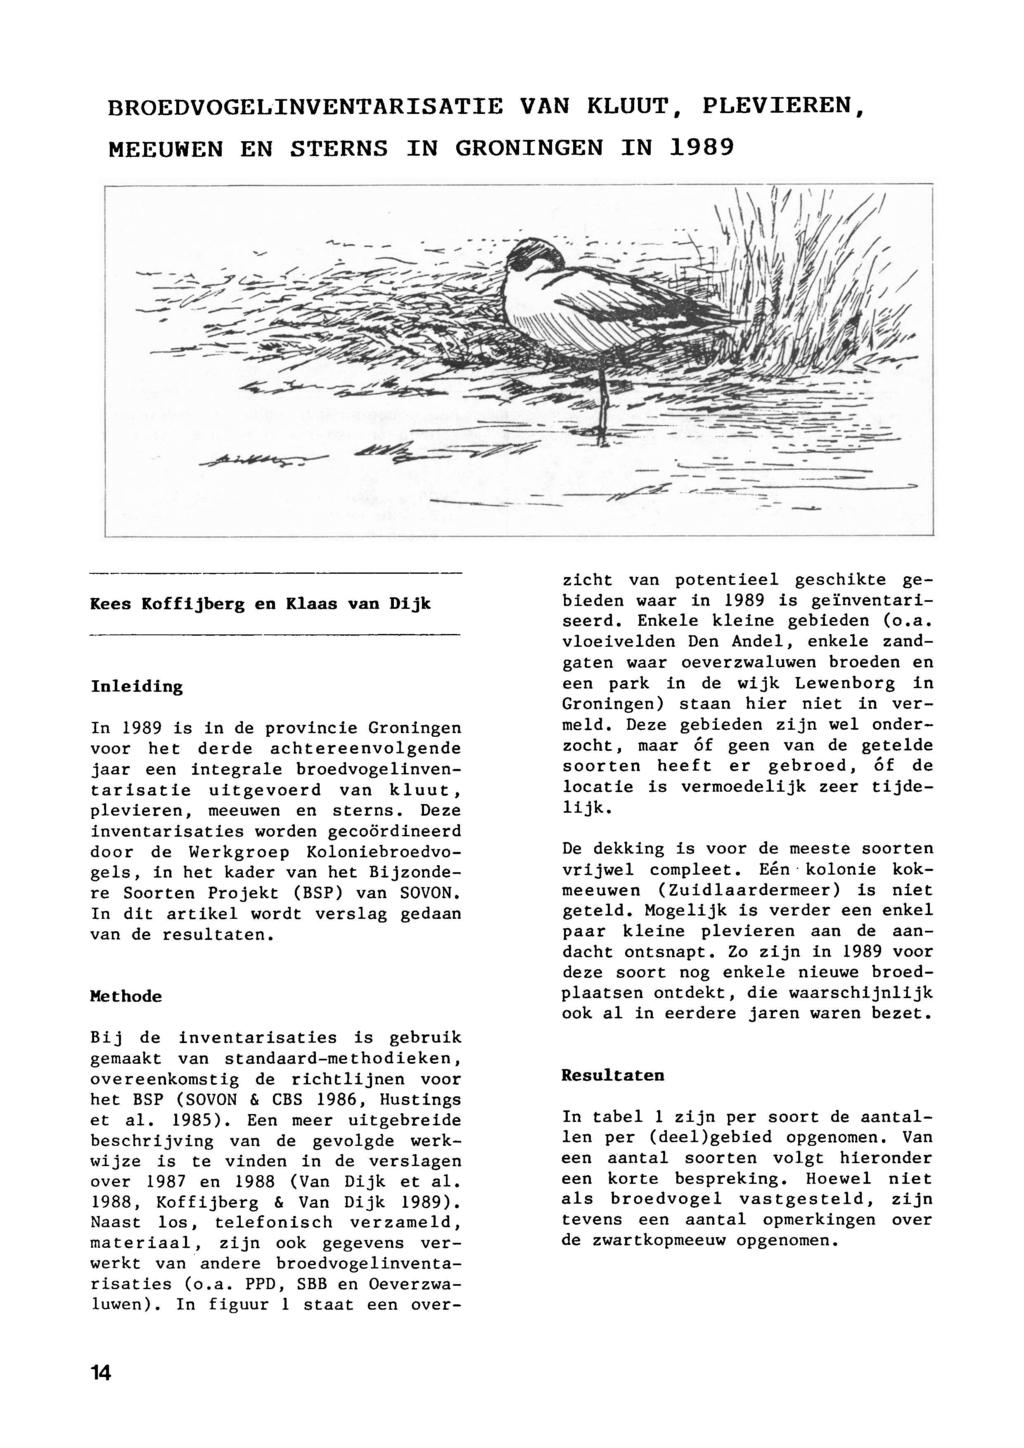 Broedvogelinventarisatie van kluut, plevieren, meeuwen en sterns in Groningen in 989 staat een overzicht van potentieel geschikte ge Kees Koffijberg en Klaas van Dijk bieden waar in 989 is